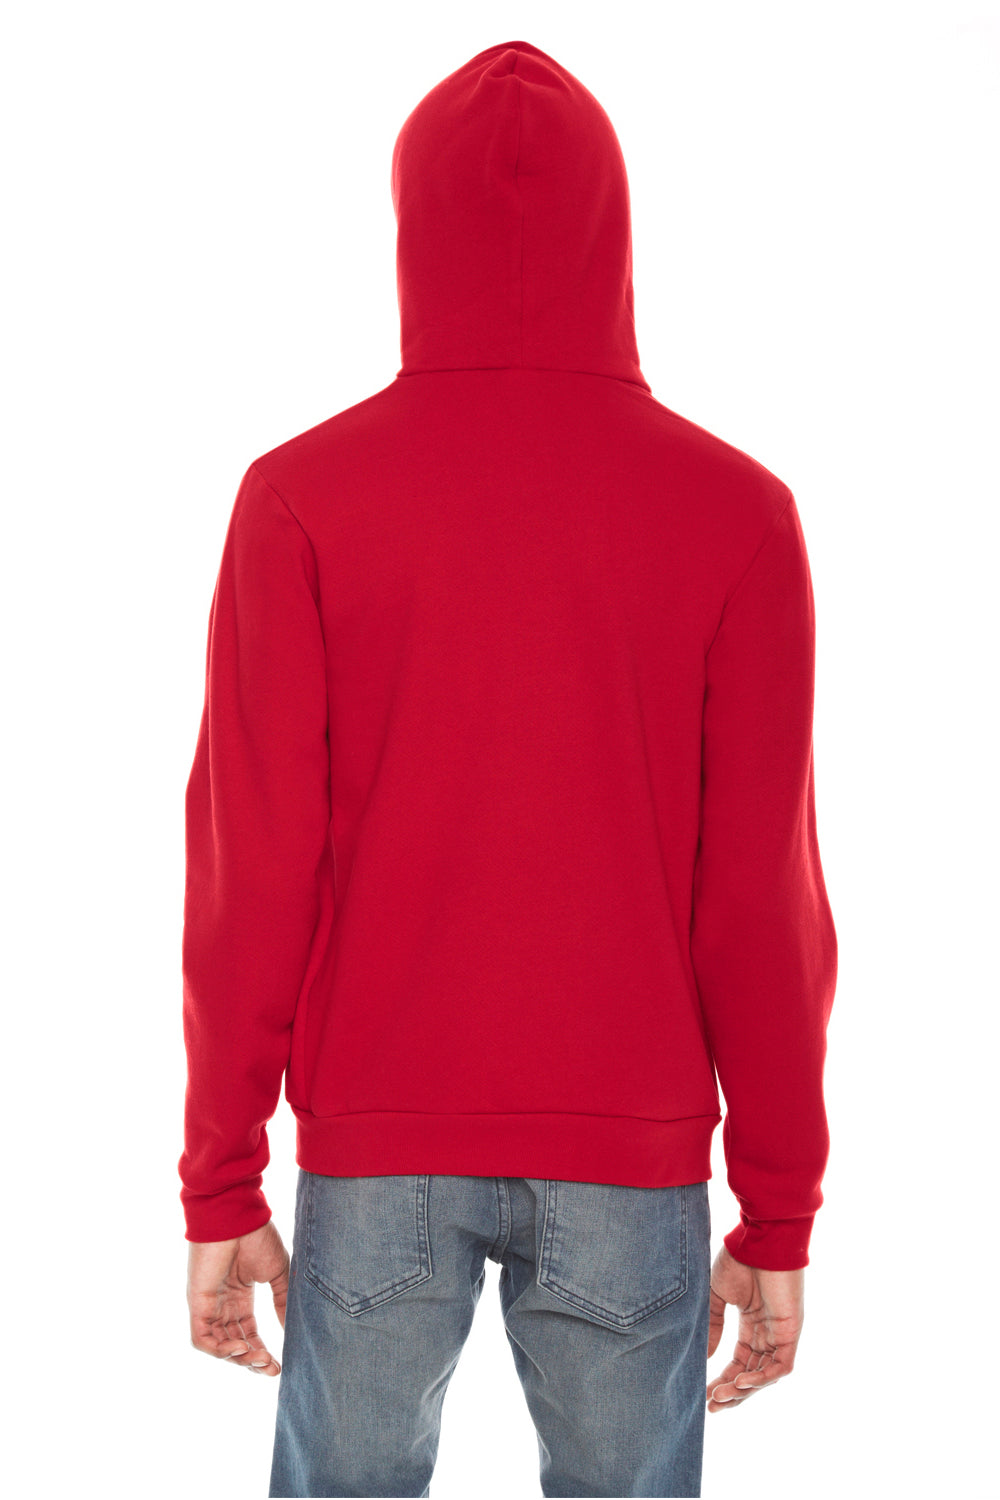 American Apparel F497W Mens Flex Fleece Full Zip Hooded Sweatshirt Hoodie Red Back